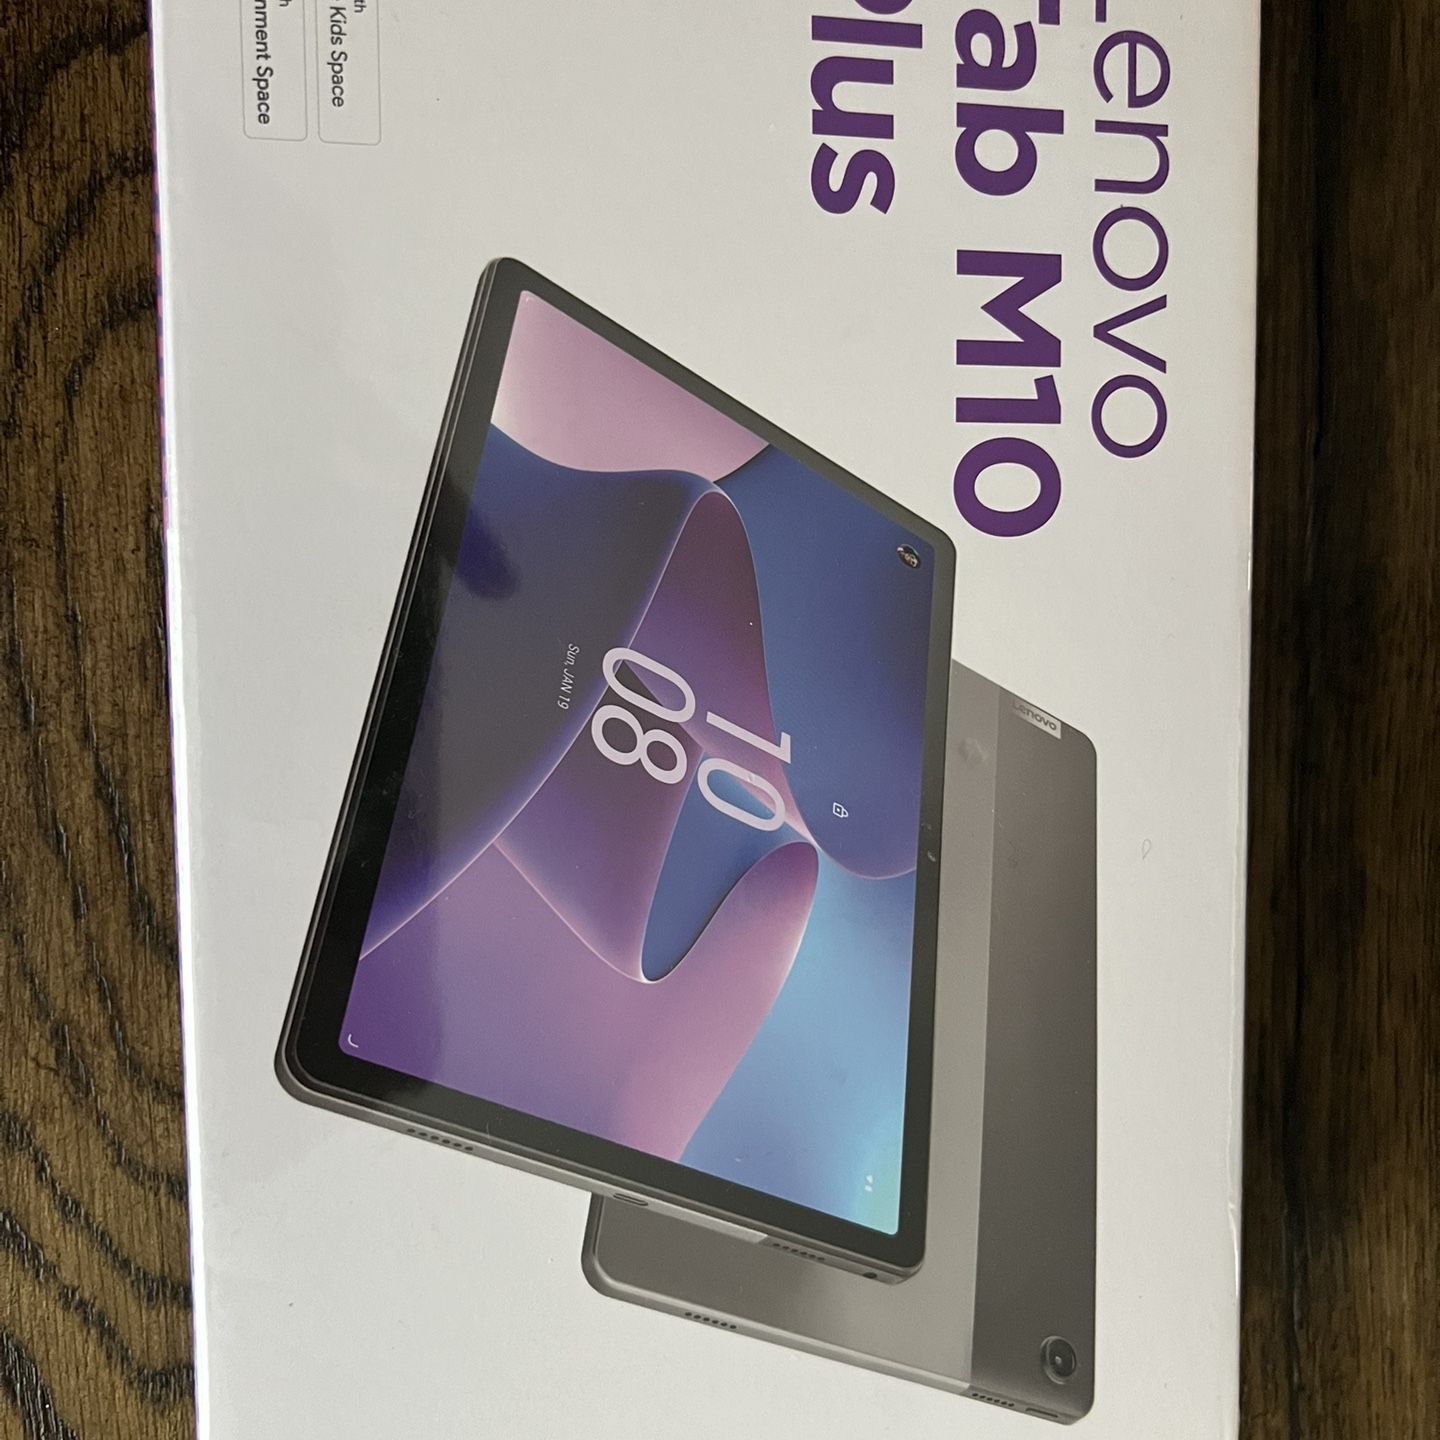 Lenovo Tab M10 Plus 3rd Generation Tablet